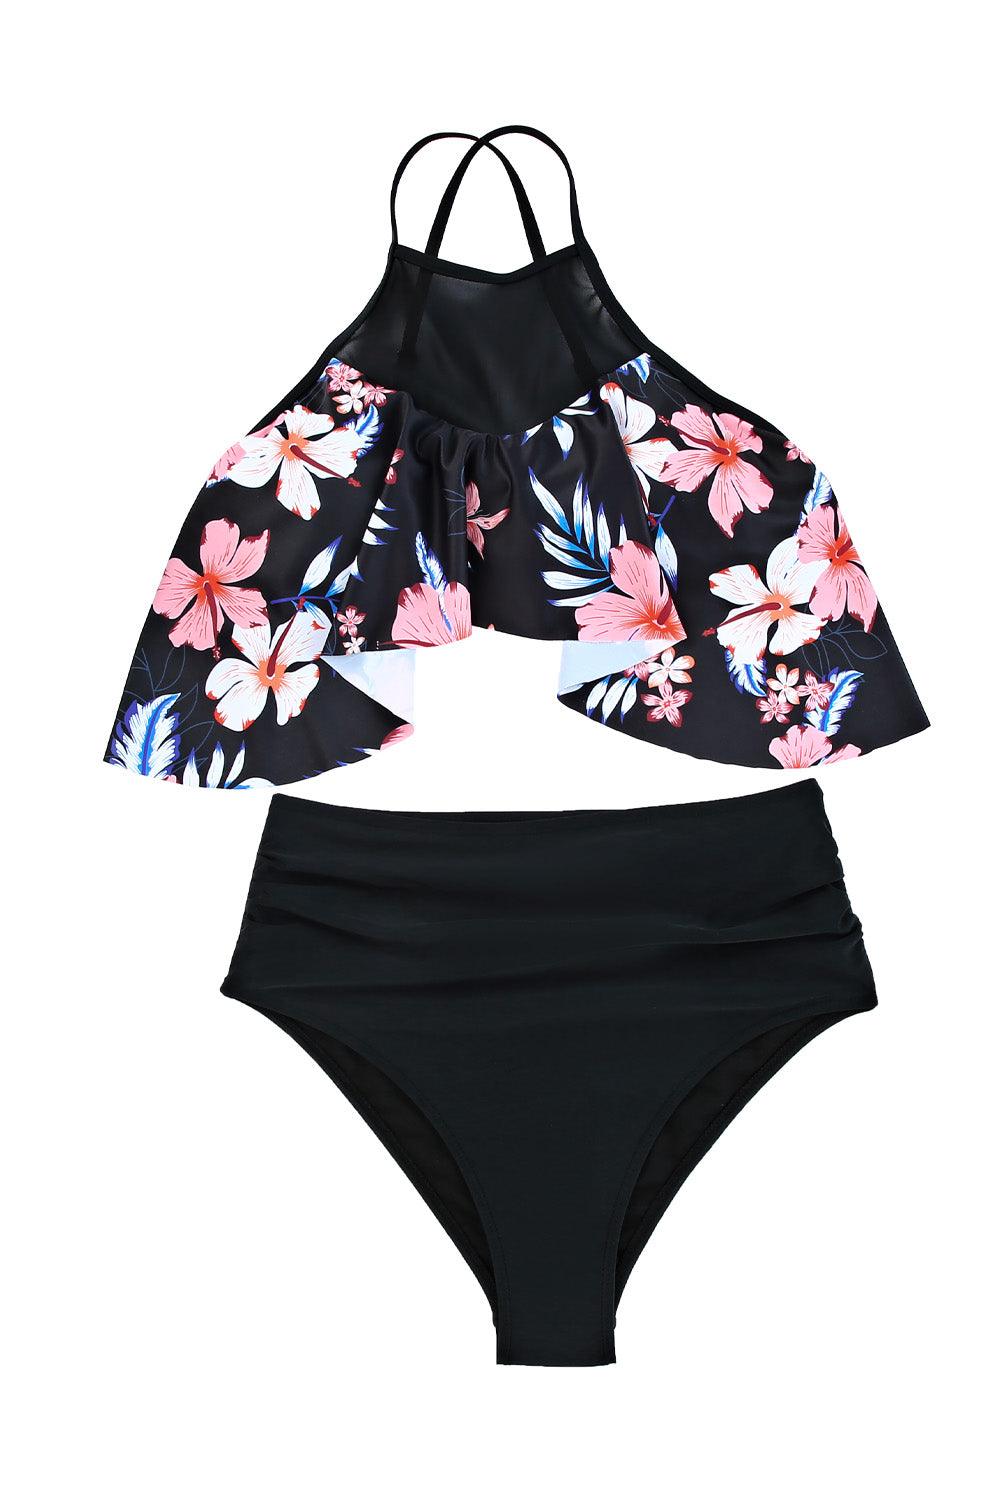 Mesh Floral Splicing Bikini - L & M Kee, LLC